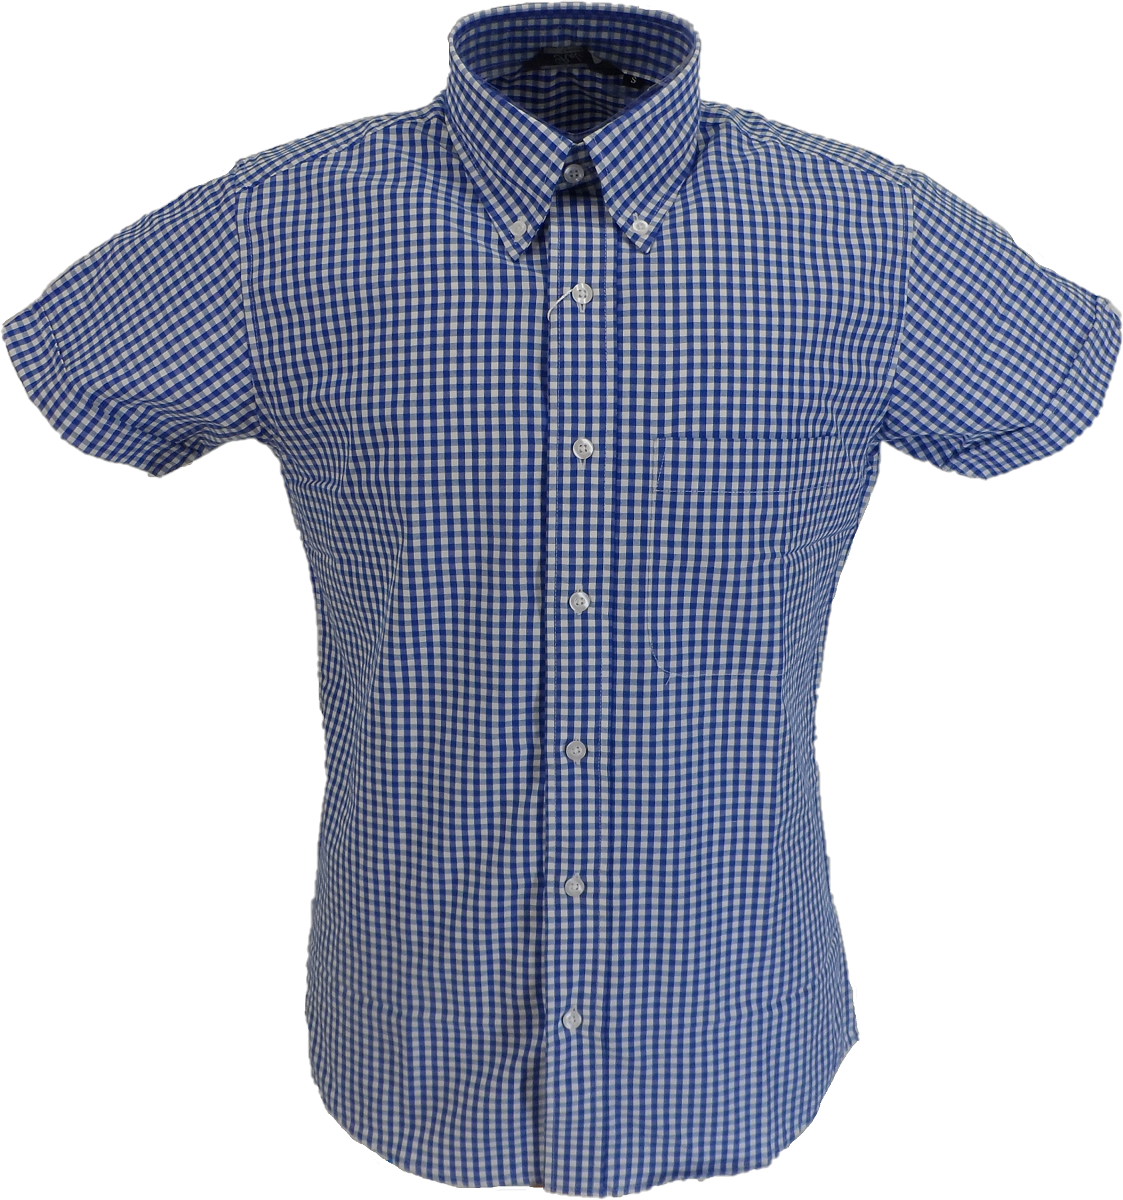 Relco chemises boutonnées à manches courtes en coton riche à carreaux vichy bleu